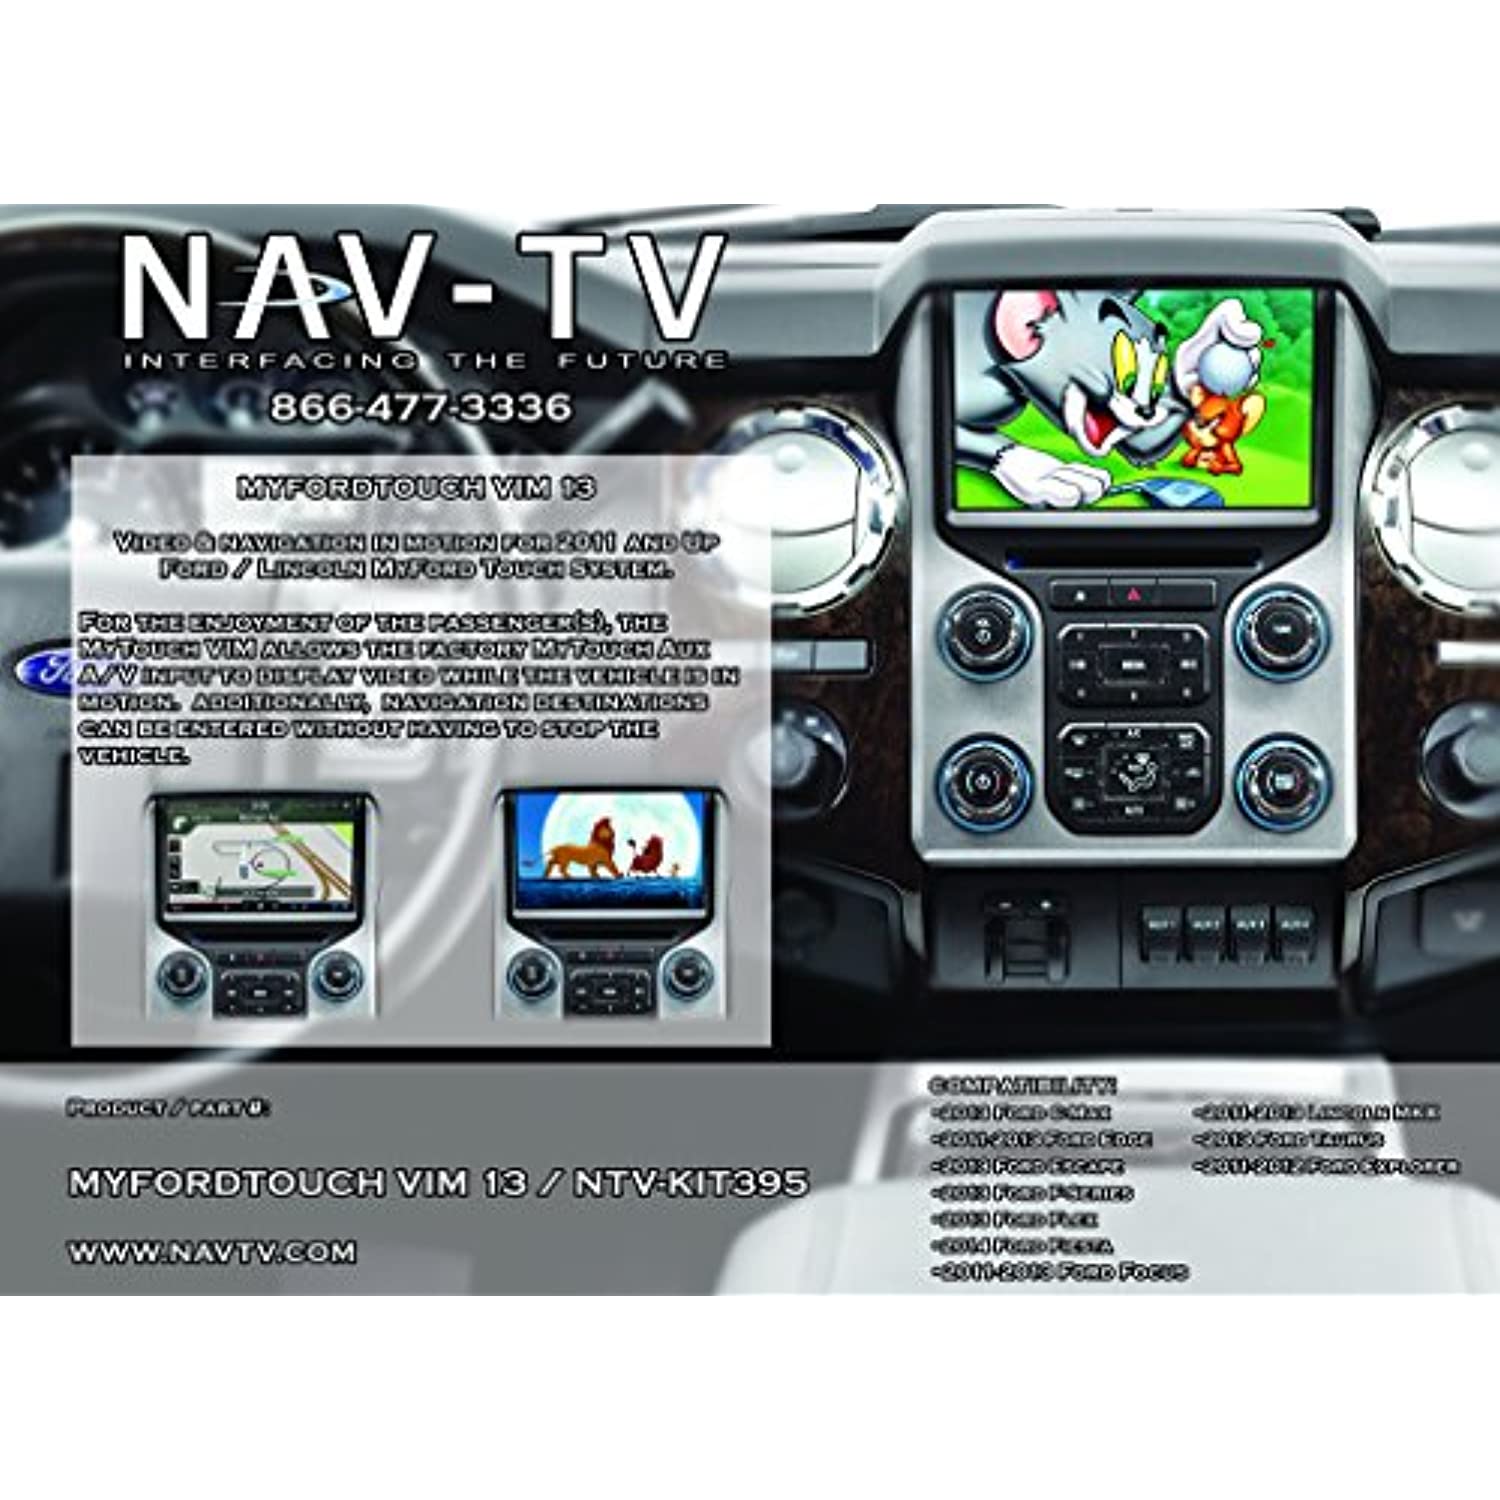 NAV-TV MyTouch-VIM13 Kit